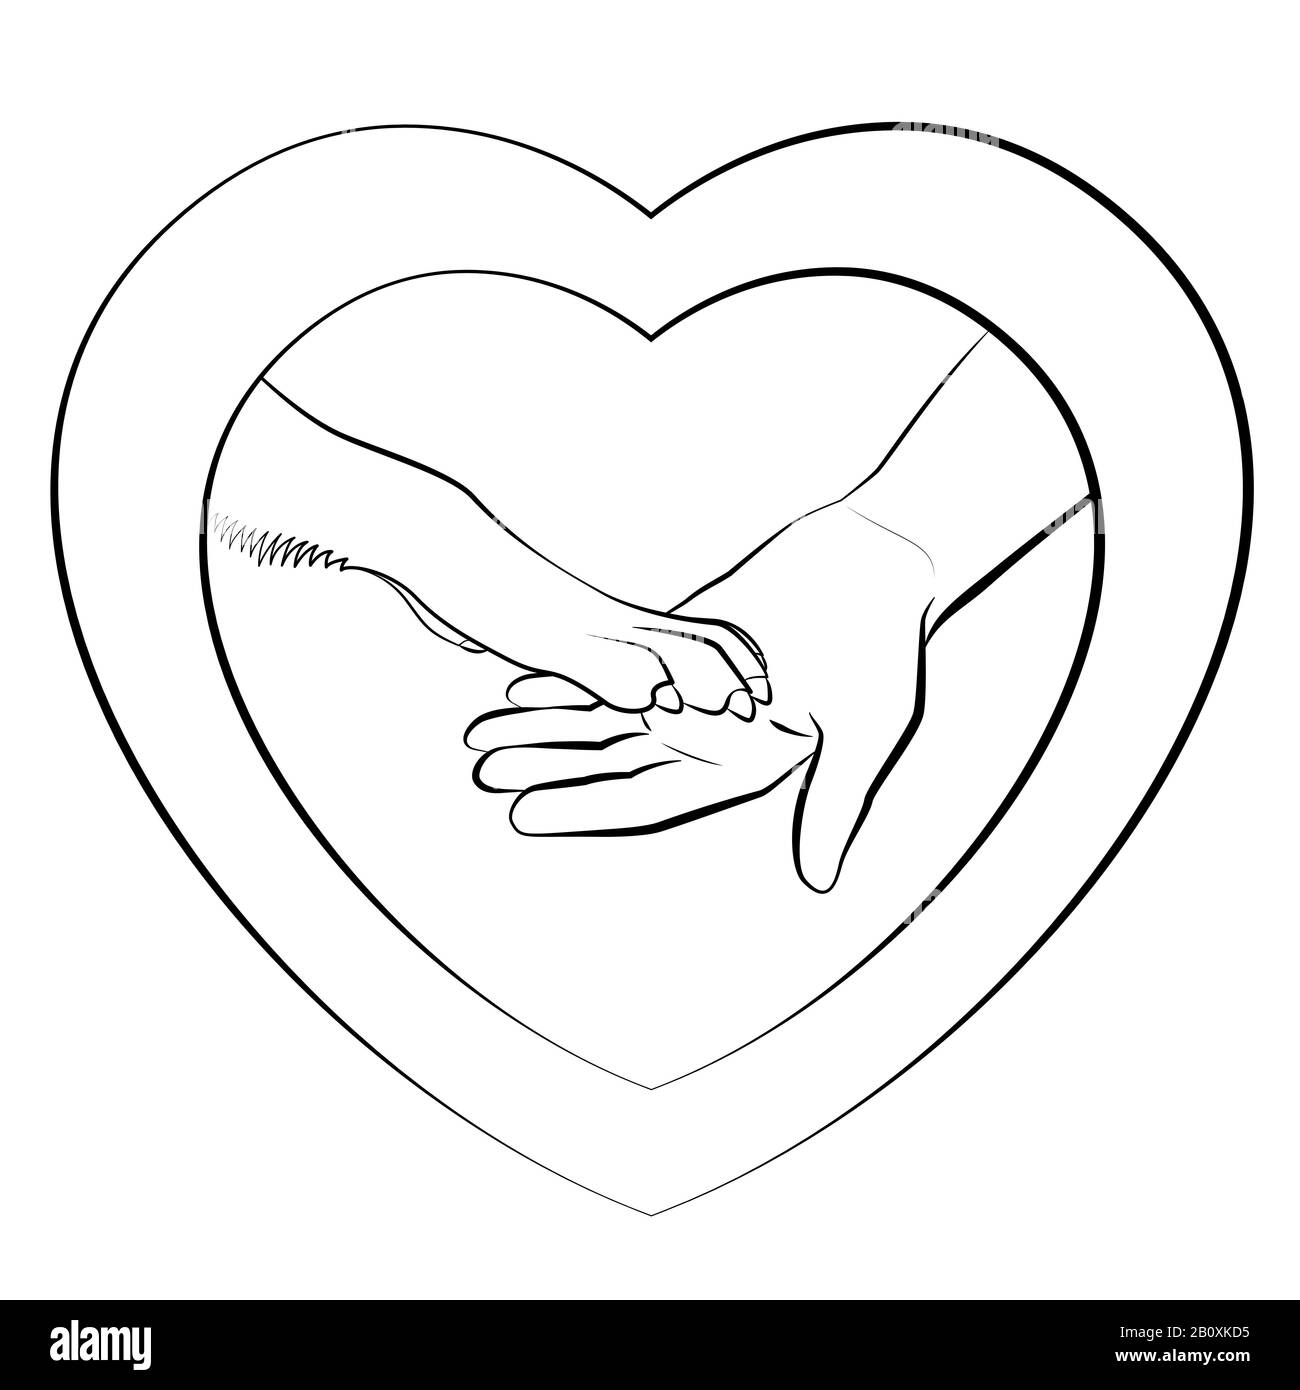 Herzförmiges Logo mit Hunden Pfote und menschlicher Hand. Hund gebärende Pfoten. Umrisszeichnung auf weißem Hintergrund. Stockfoto